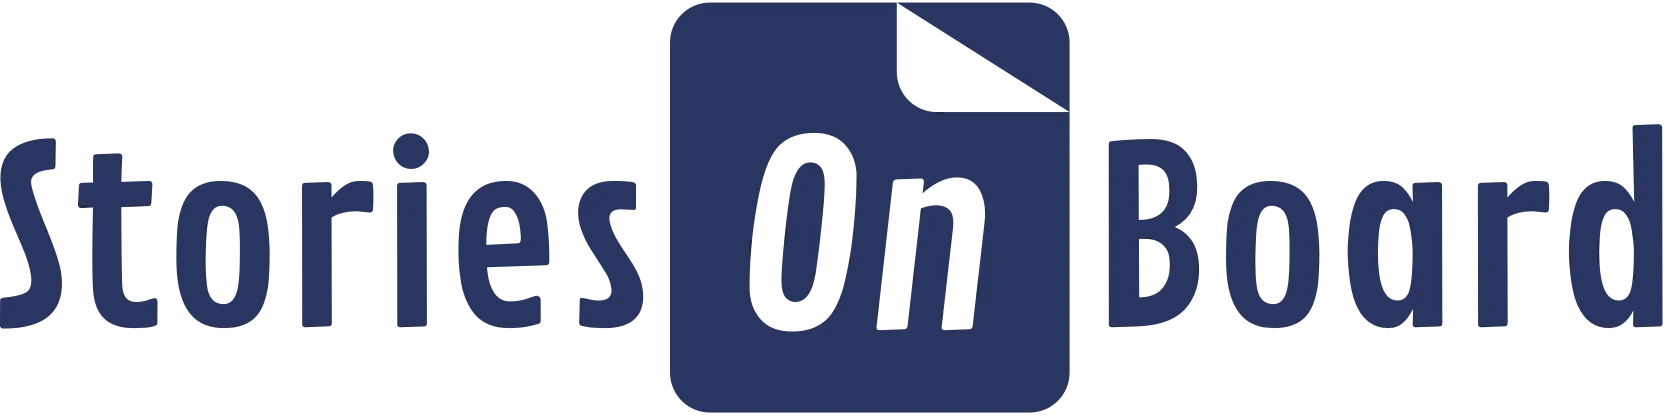 storiesonboard logo white